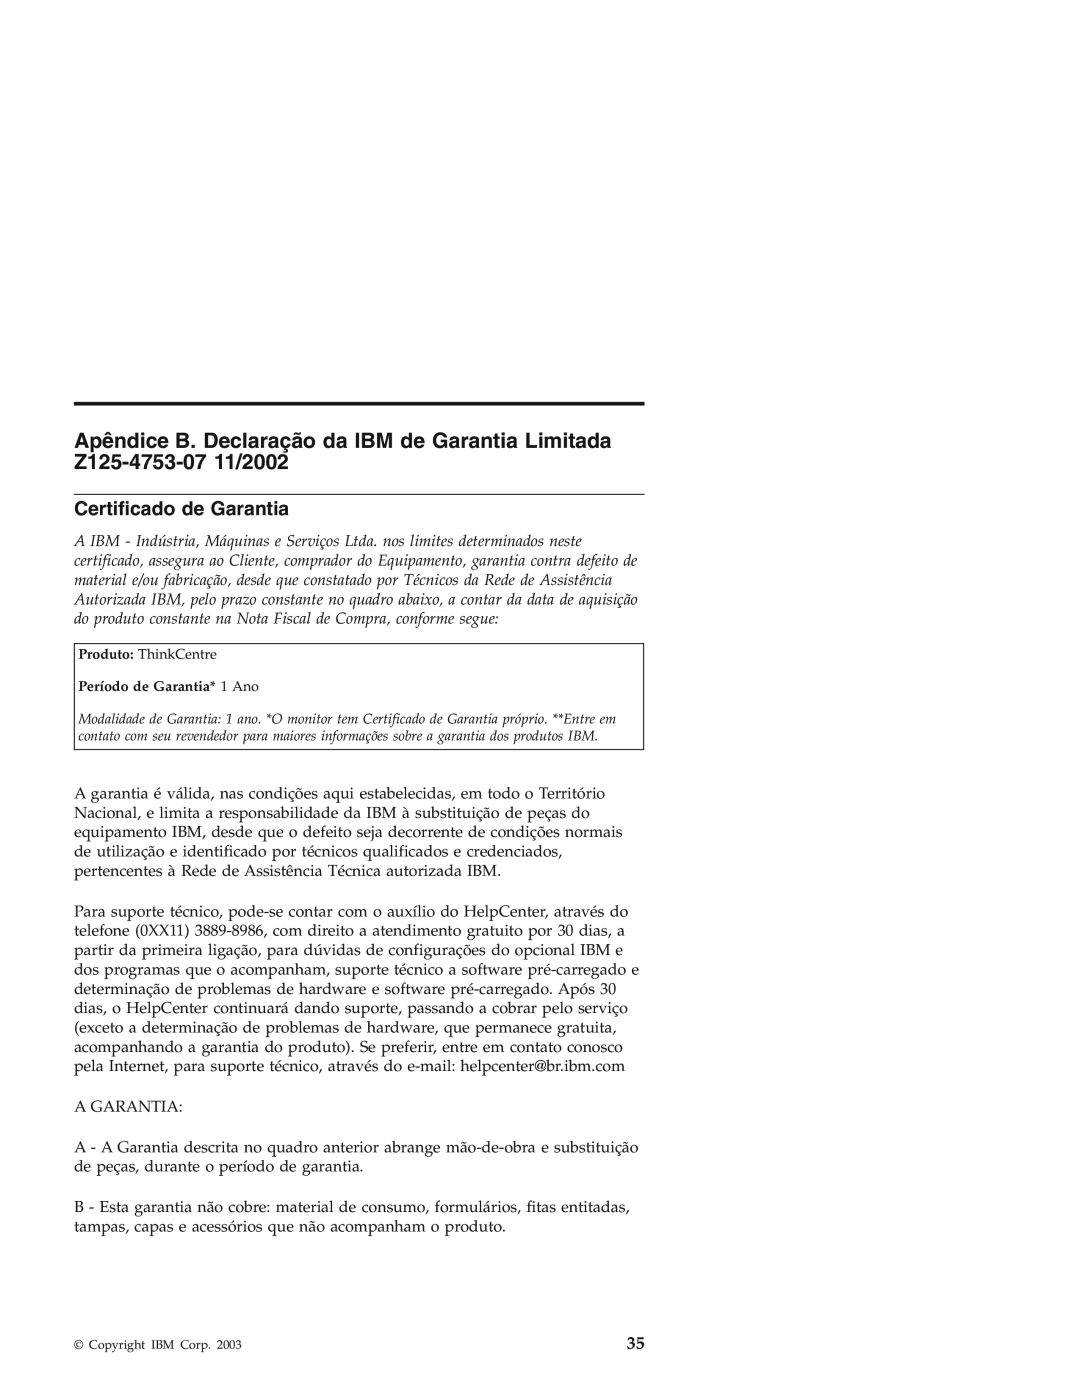 IBM Personal Computer manual Certificado de Garantia 